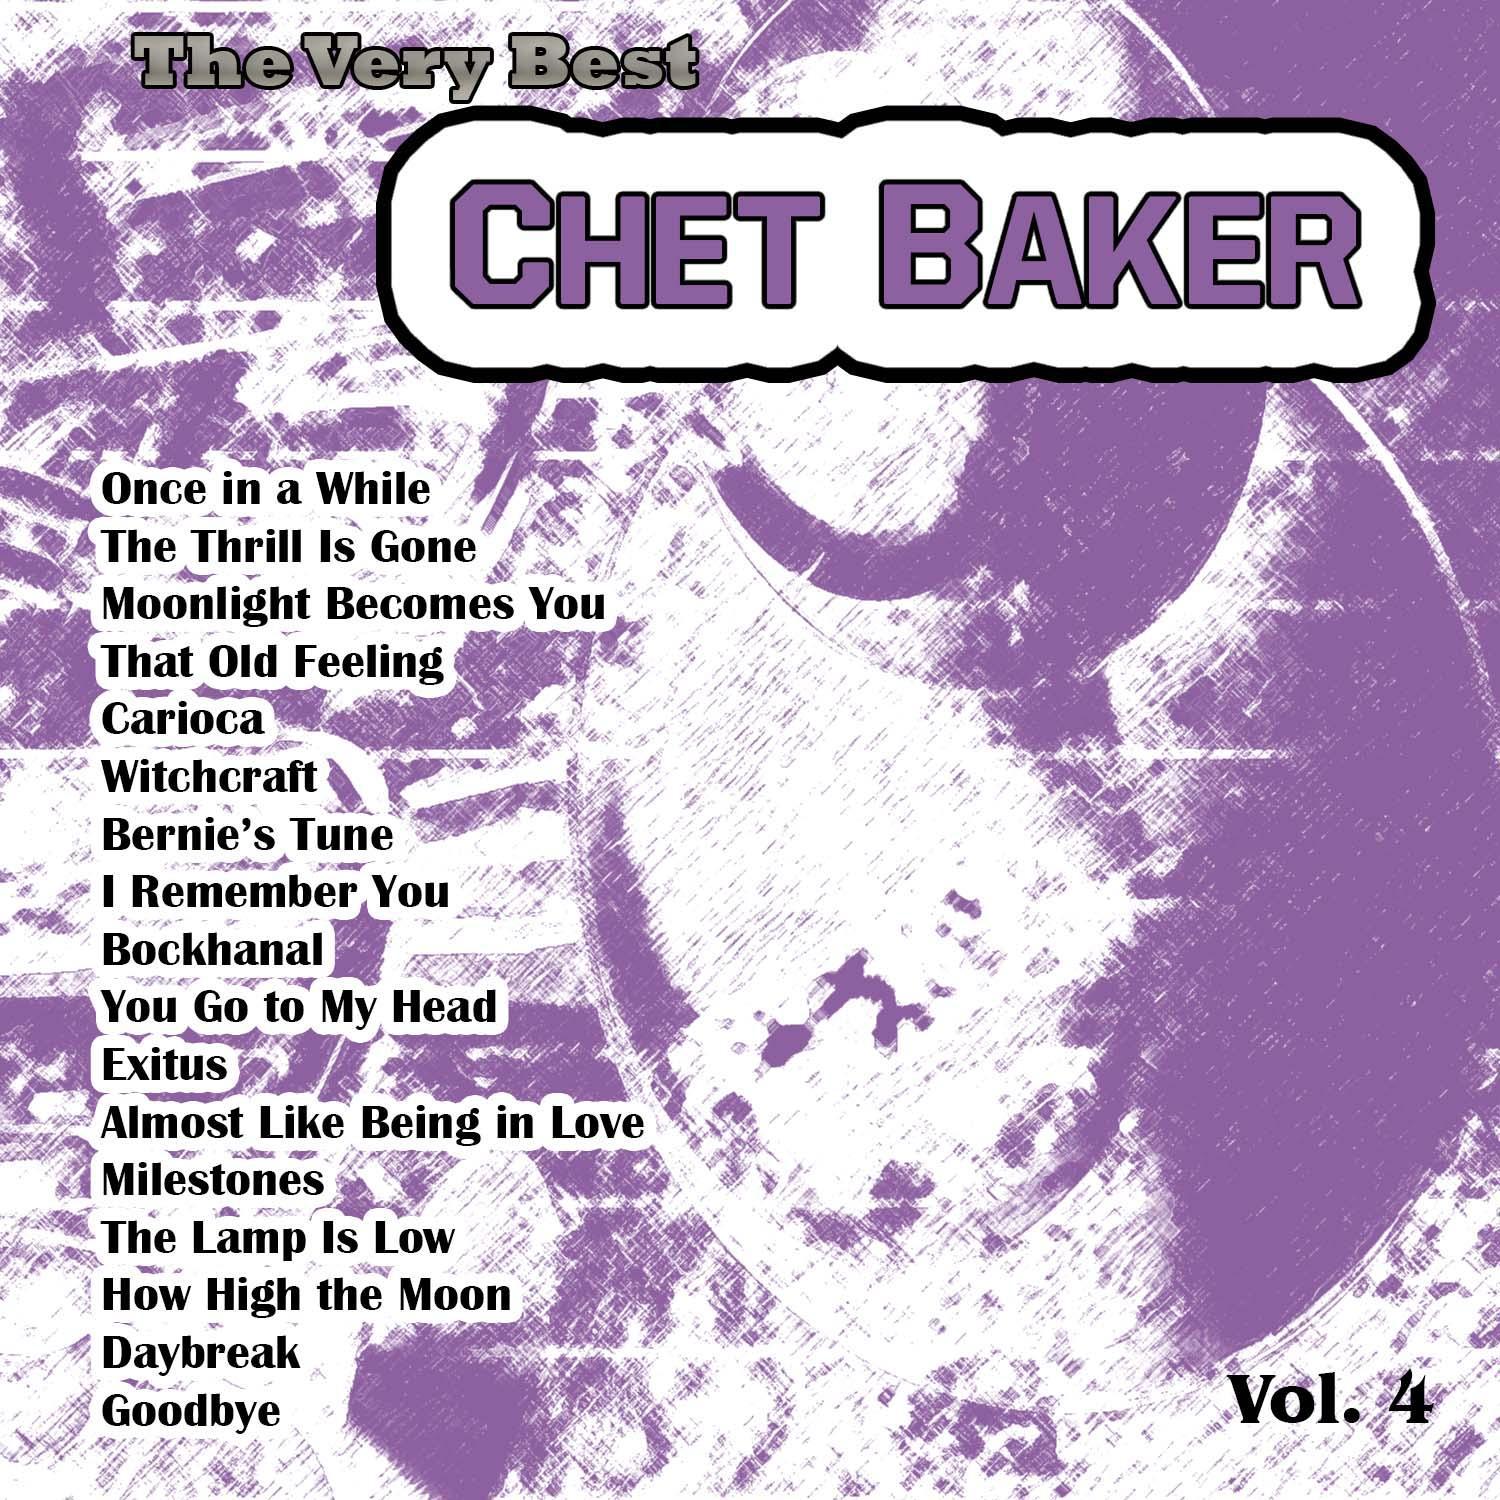 The Very Best: Chet Baker Vol. 4专辑